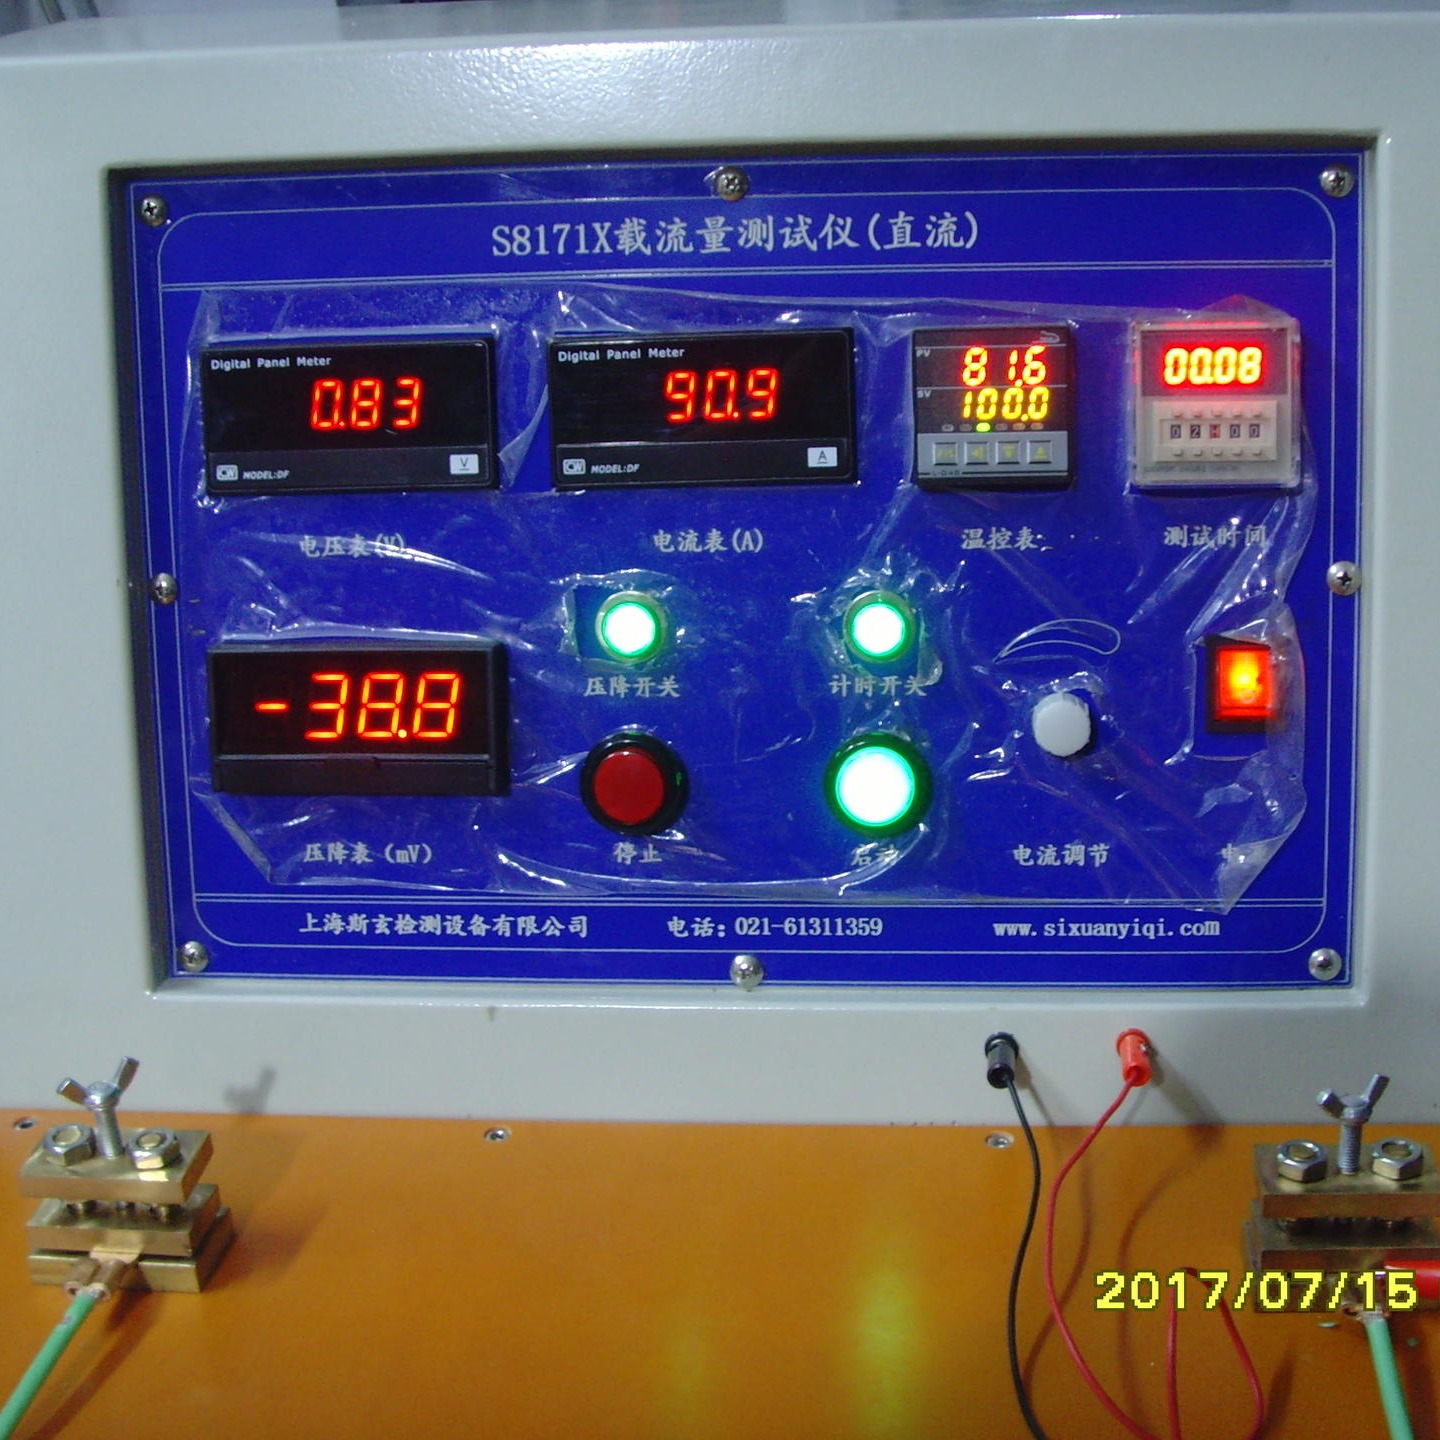 电缆线温升测试仪 可显示温度曲线 功能可以定制  S8171X 电线电缆载流量测试试验机图片